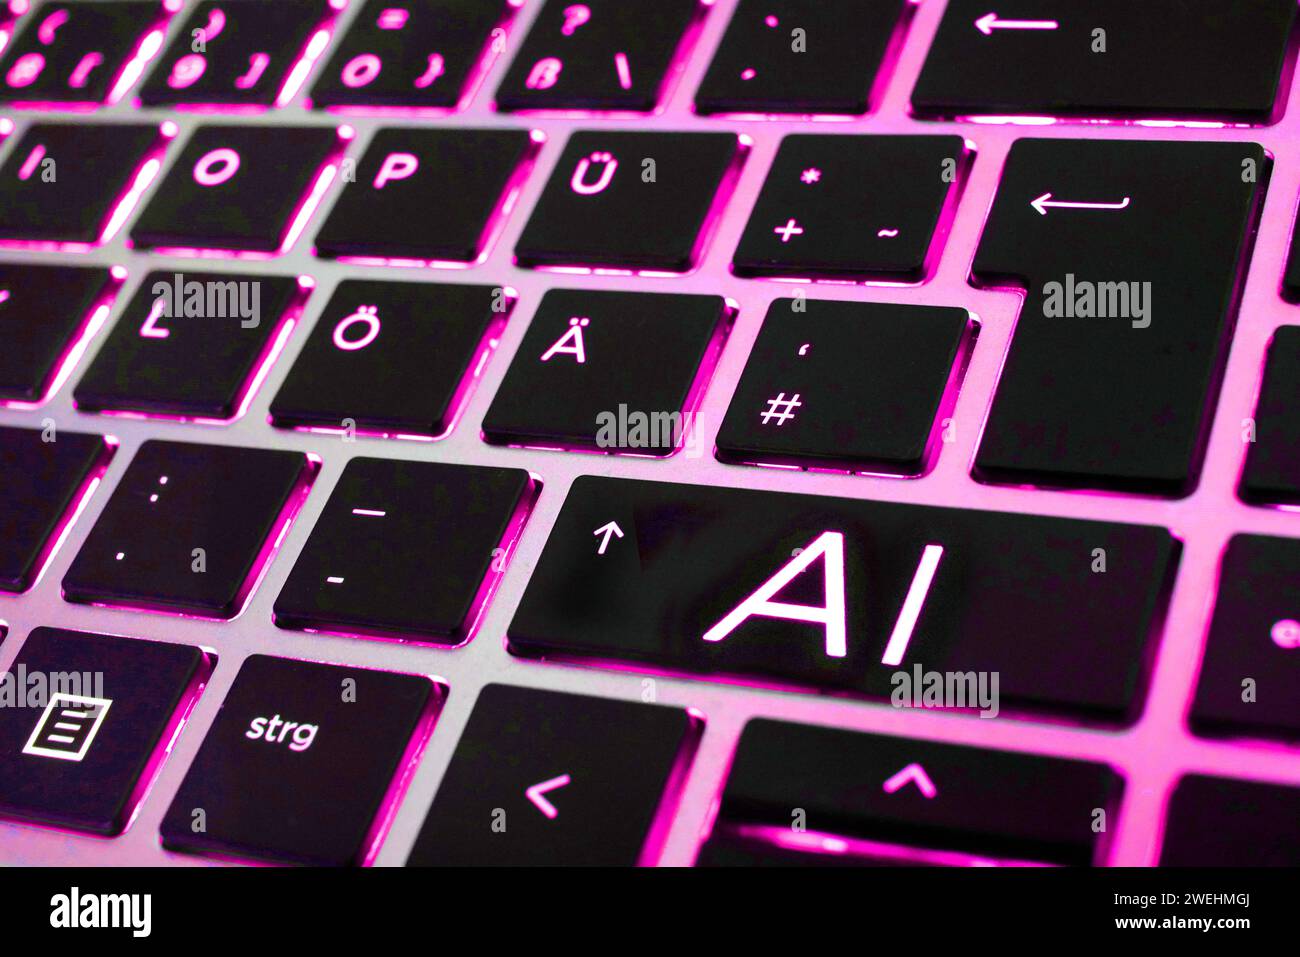 FOTOMONTAGE - Artificial Intelligence, Künstliche Intelligenz. Nahaufnahme einer Laptop-Tastatur mit einer AI-Taste *** FOTOMONTAGE Artificial Intelligence, Artificial Intelligence Close-up of a laptop keyboard with an AI key Stock Photo